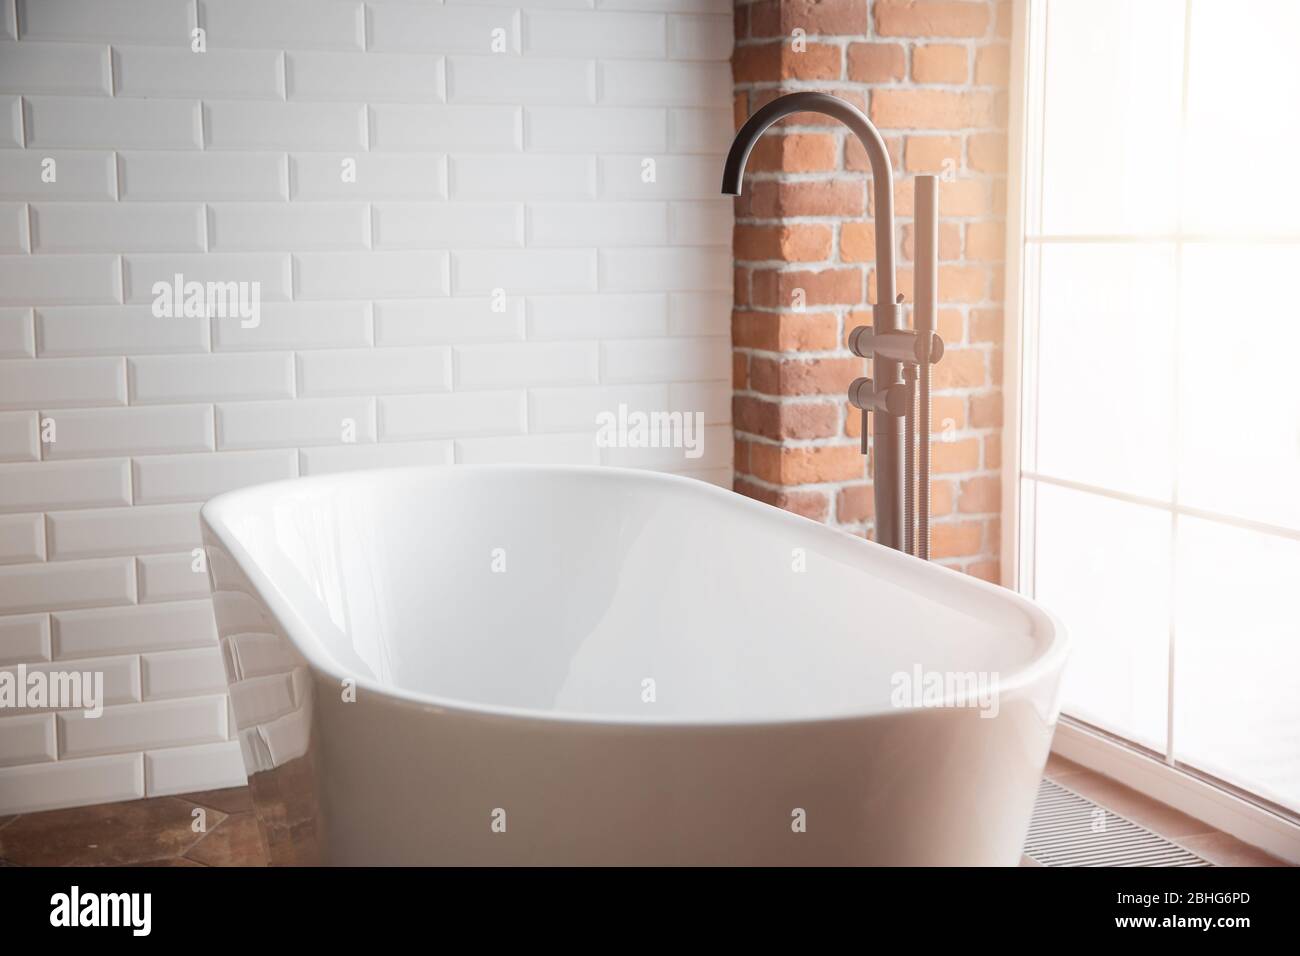 Bagno moderno con vasca bianca indipendente e rubinetto nero. Pareti in mattoni in stile loft Foto Stock